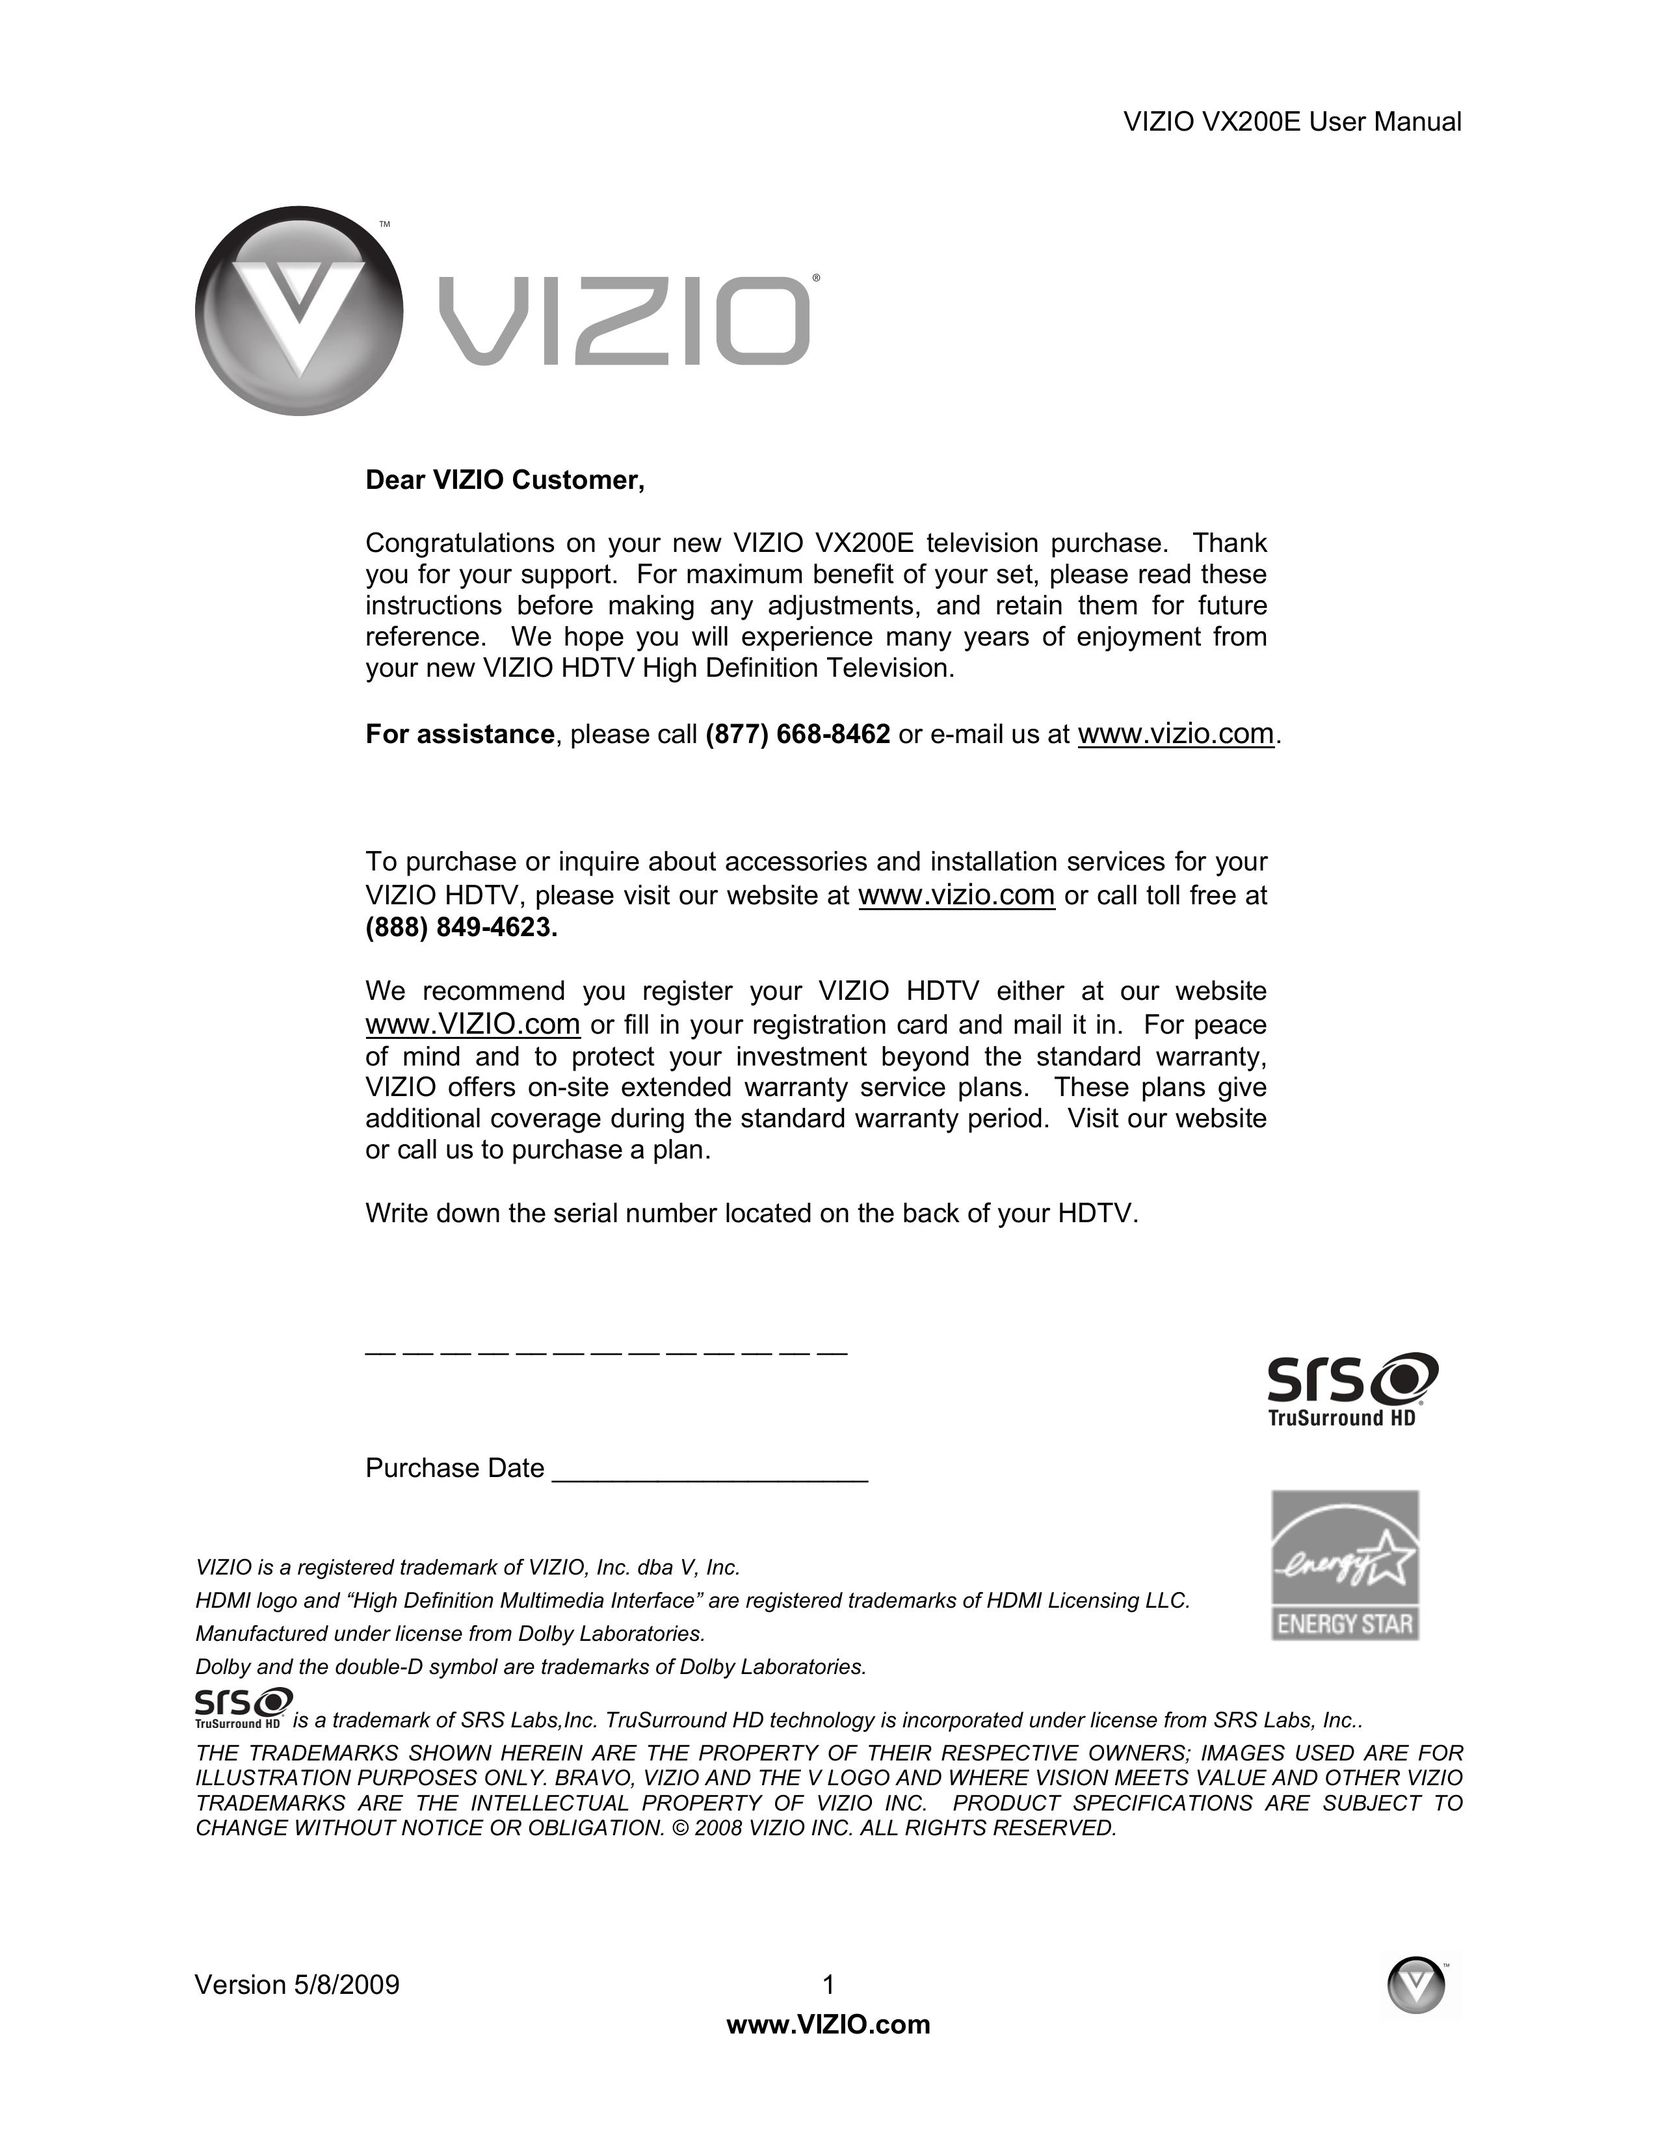 Vizio VX200E Cable Box User Manual